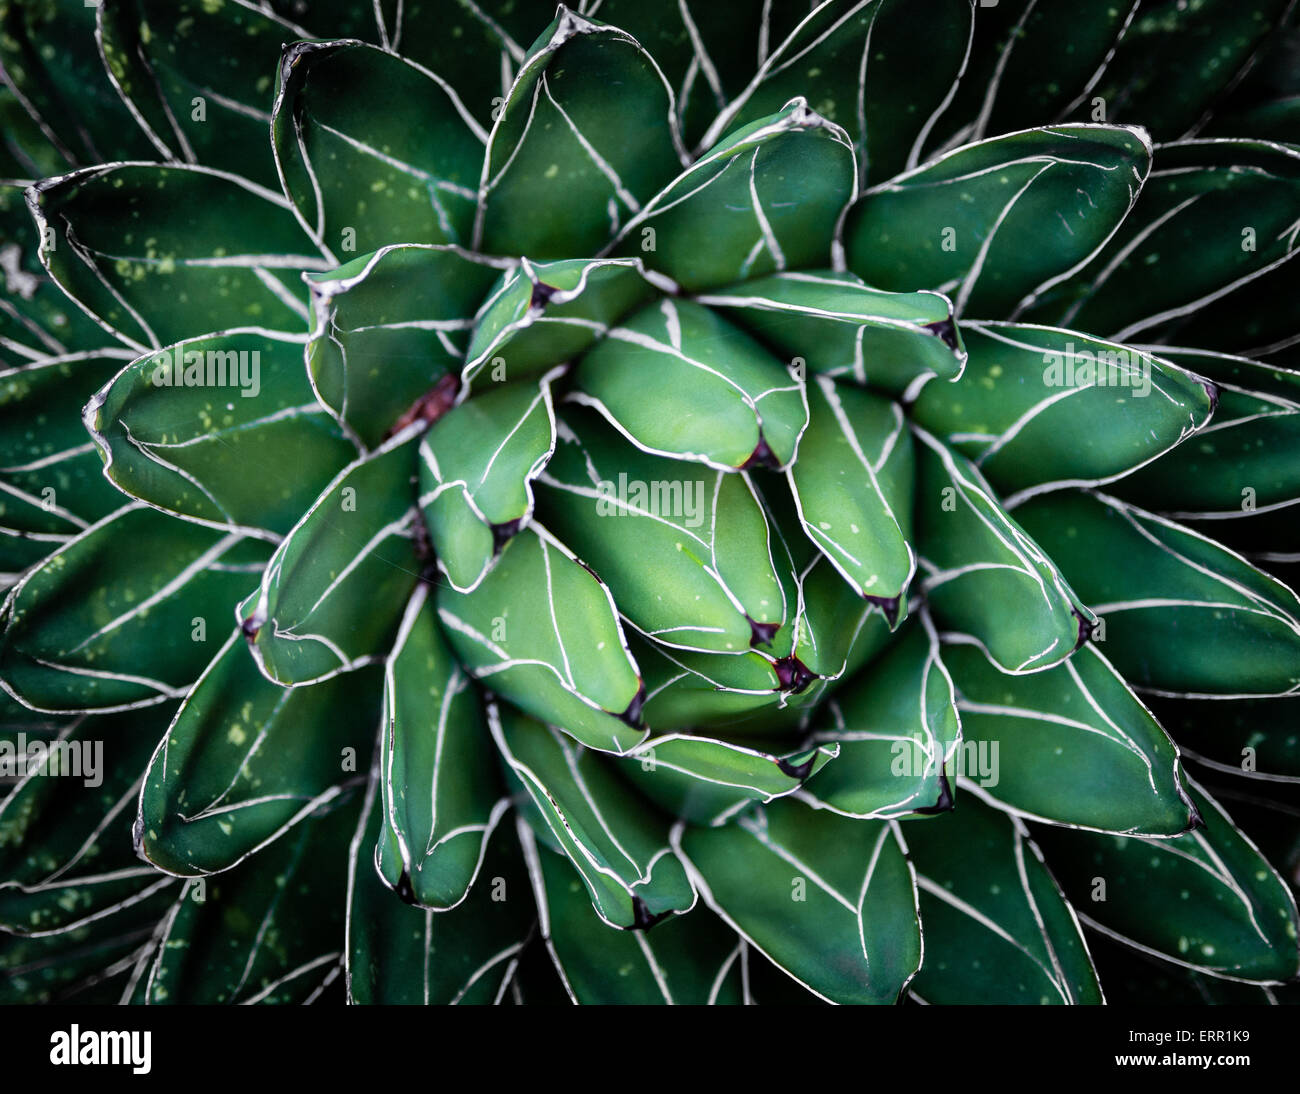 Una planta grasa desde el lado superior, revelando un hermoso efecto de textura Foto de stock